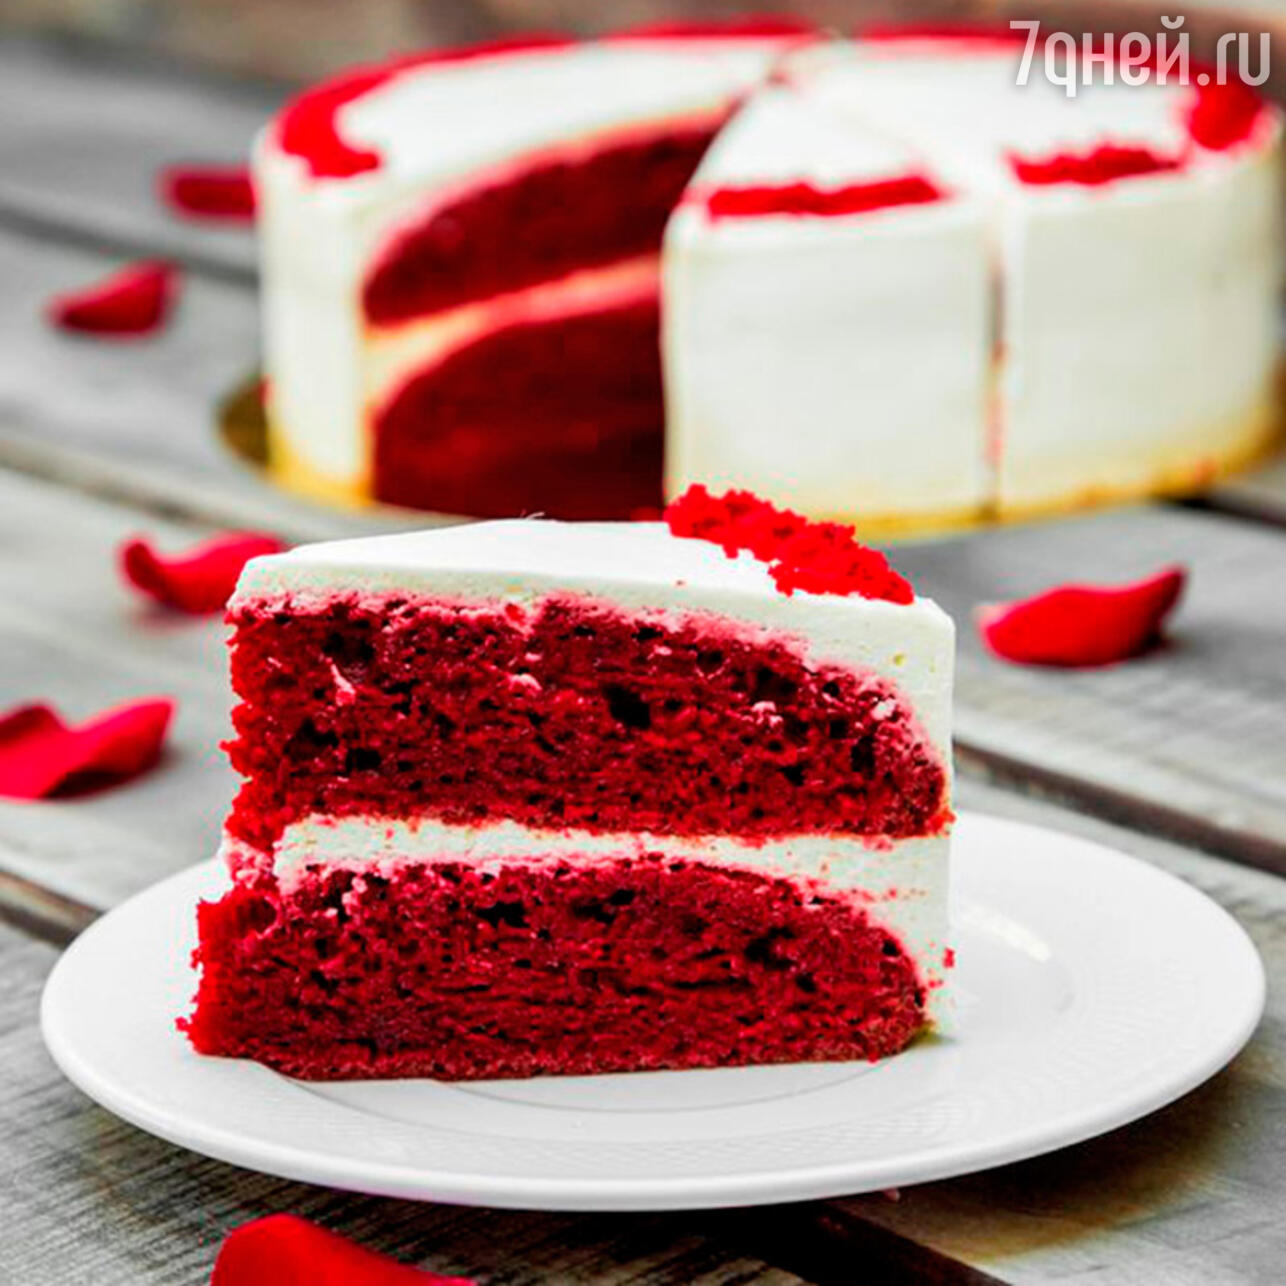 Рецепты тортов : Простые рецепты вкусных тортов | ВКонтакте